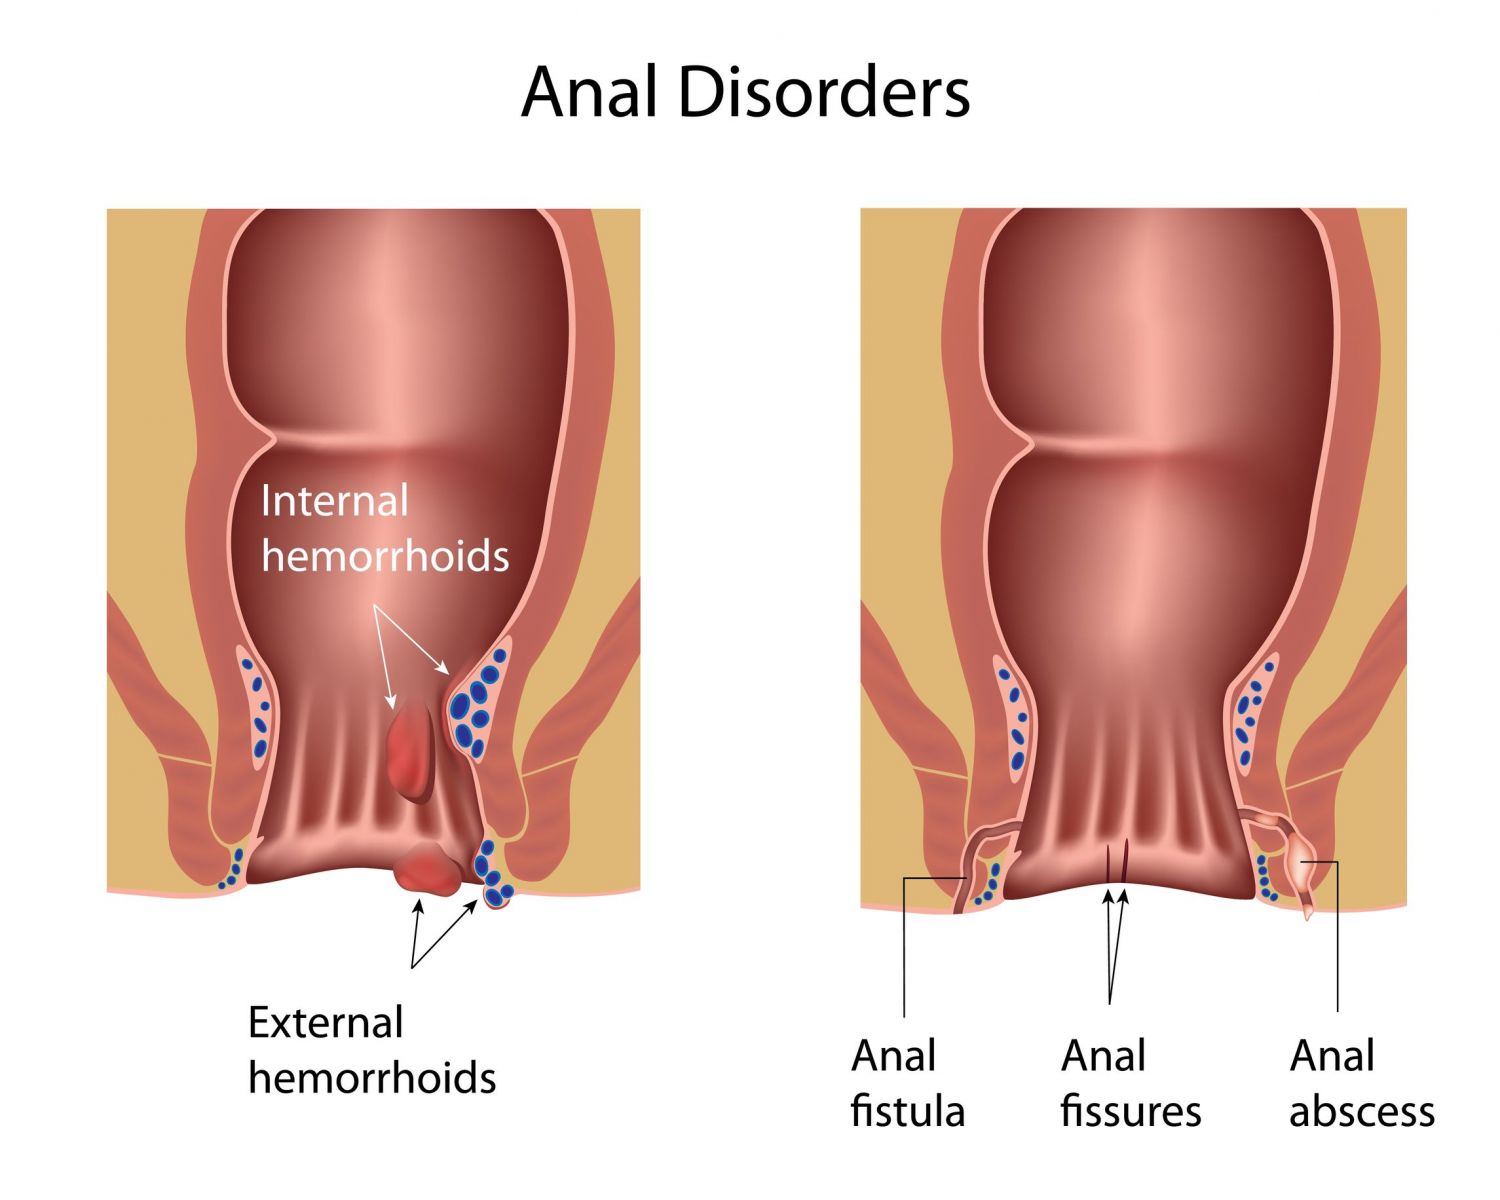 Anal abscess and fistula